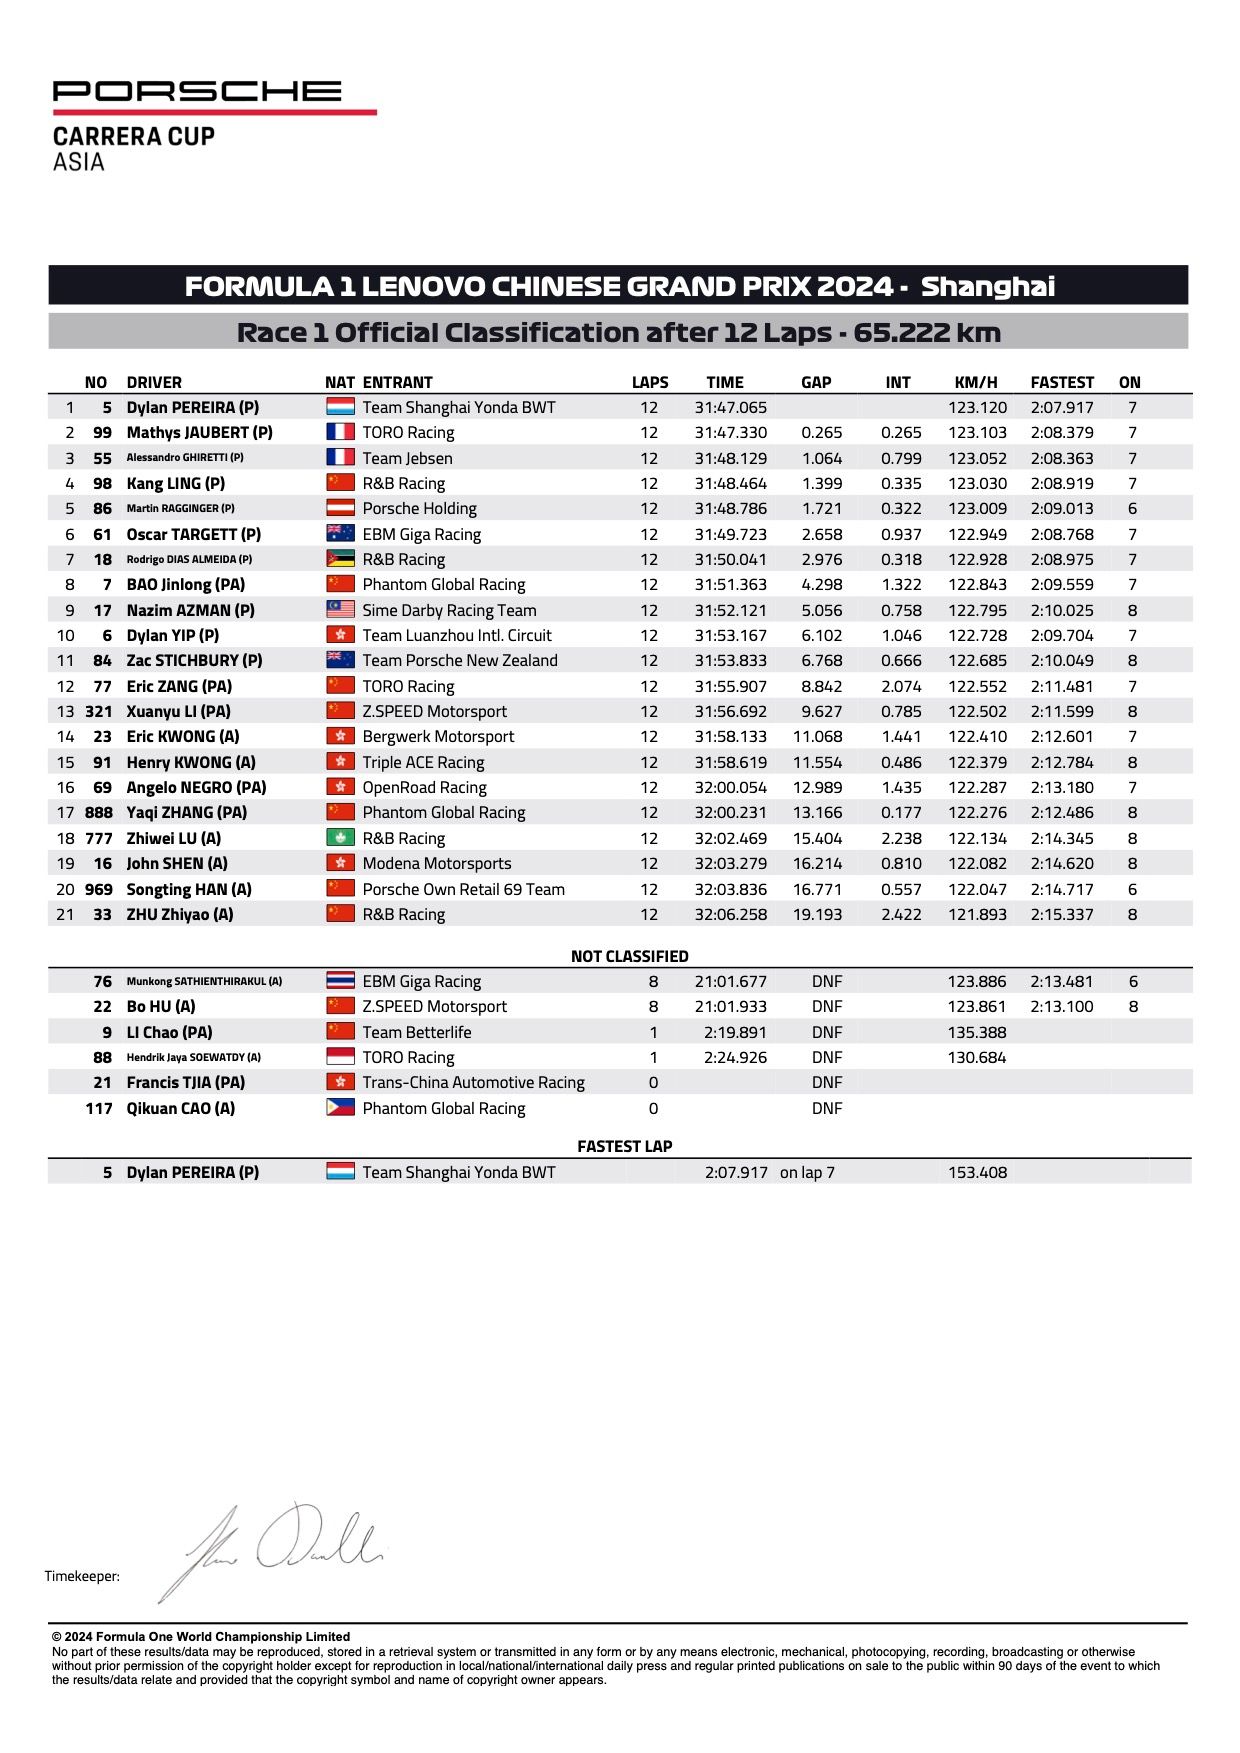 Risultati ufficiali della Porsche Carrera Cup Asia 2024 Shanghai Round 1 e 2 Gara 1